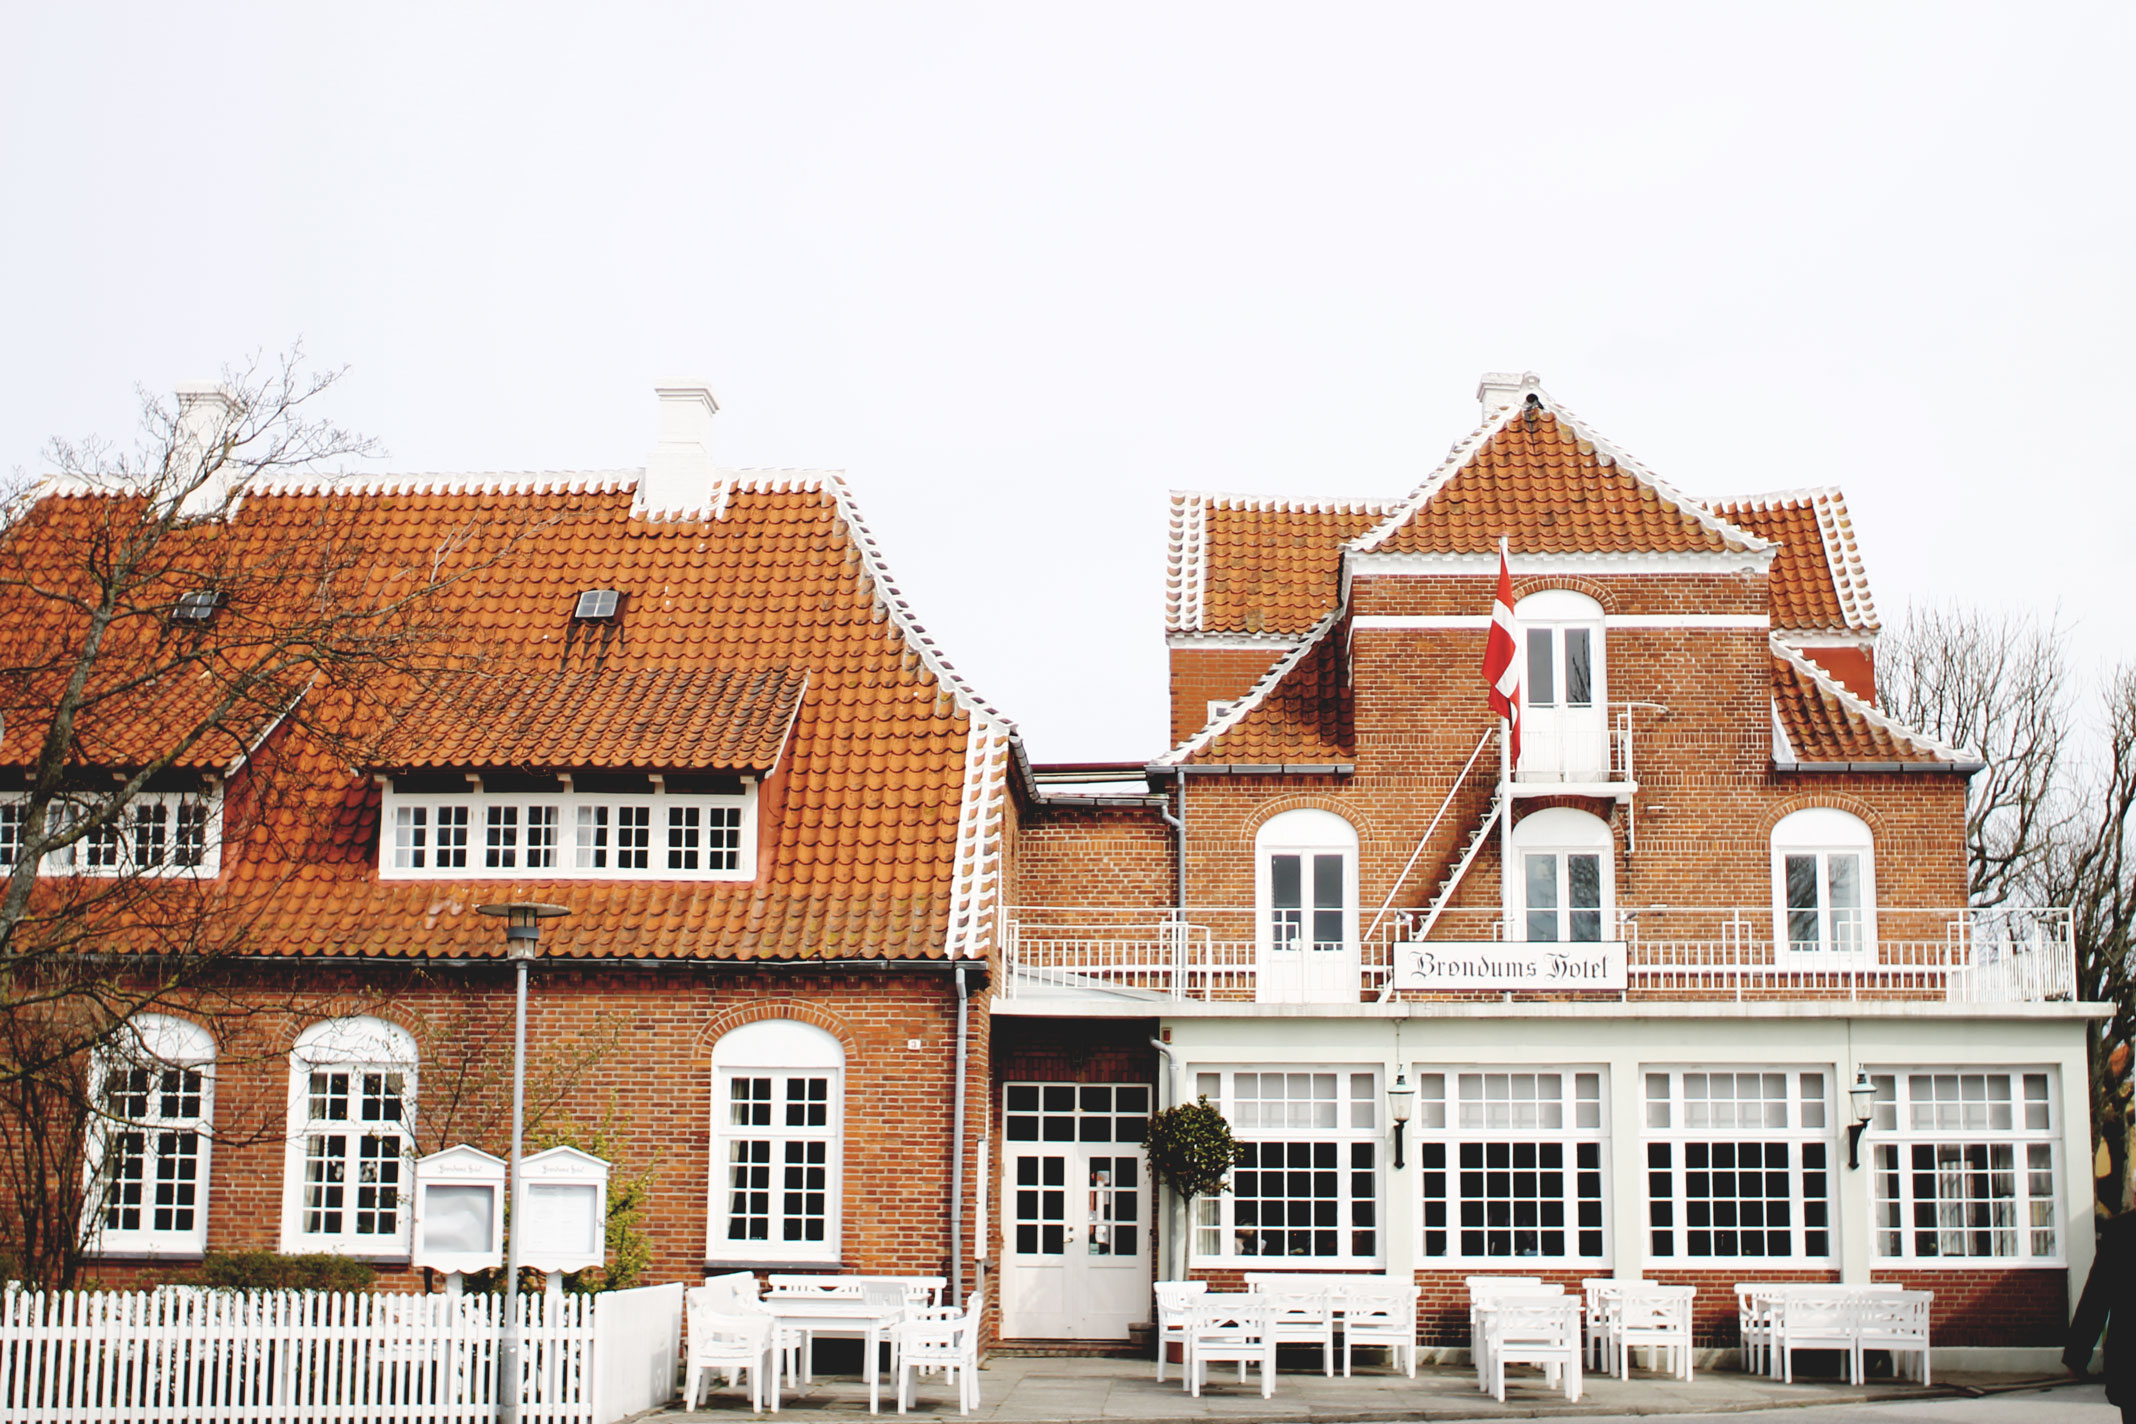 Styleat30 Blog - Visit Skagen, Denmark, Travel Guide - 25